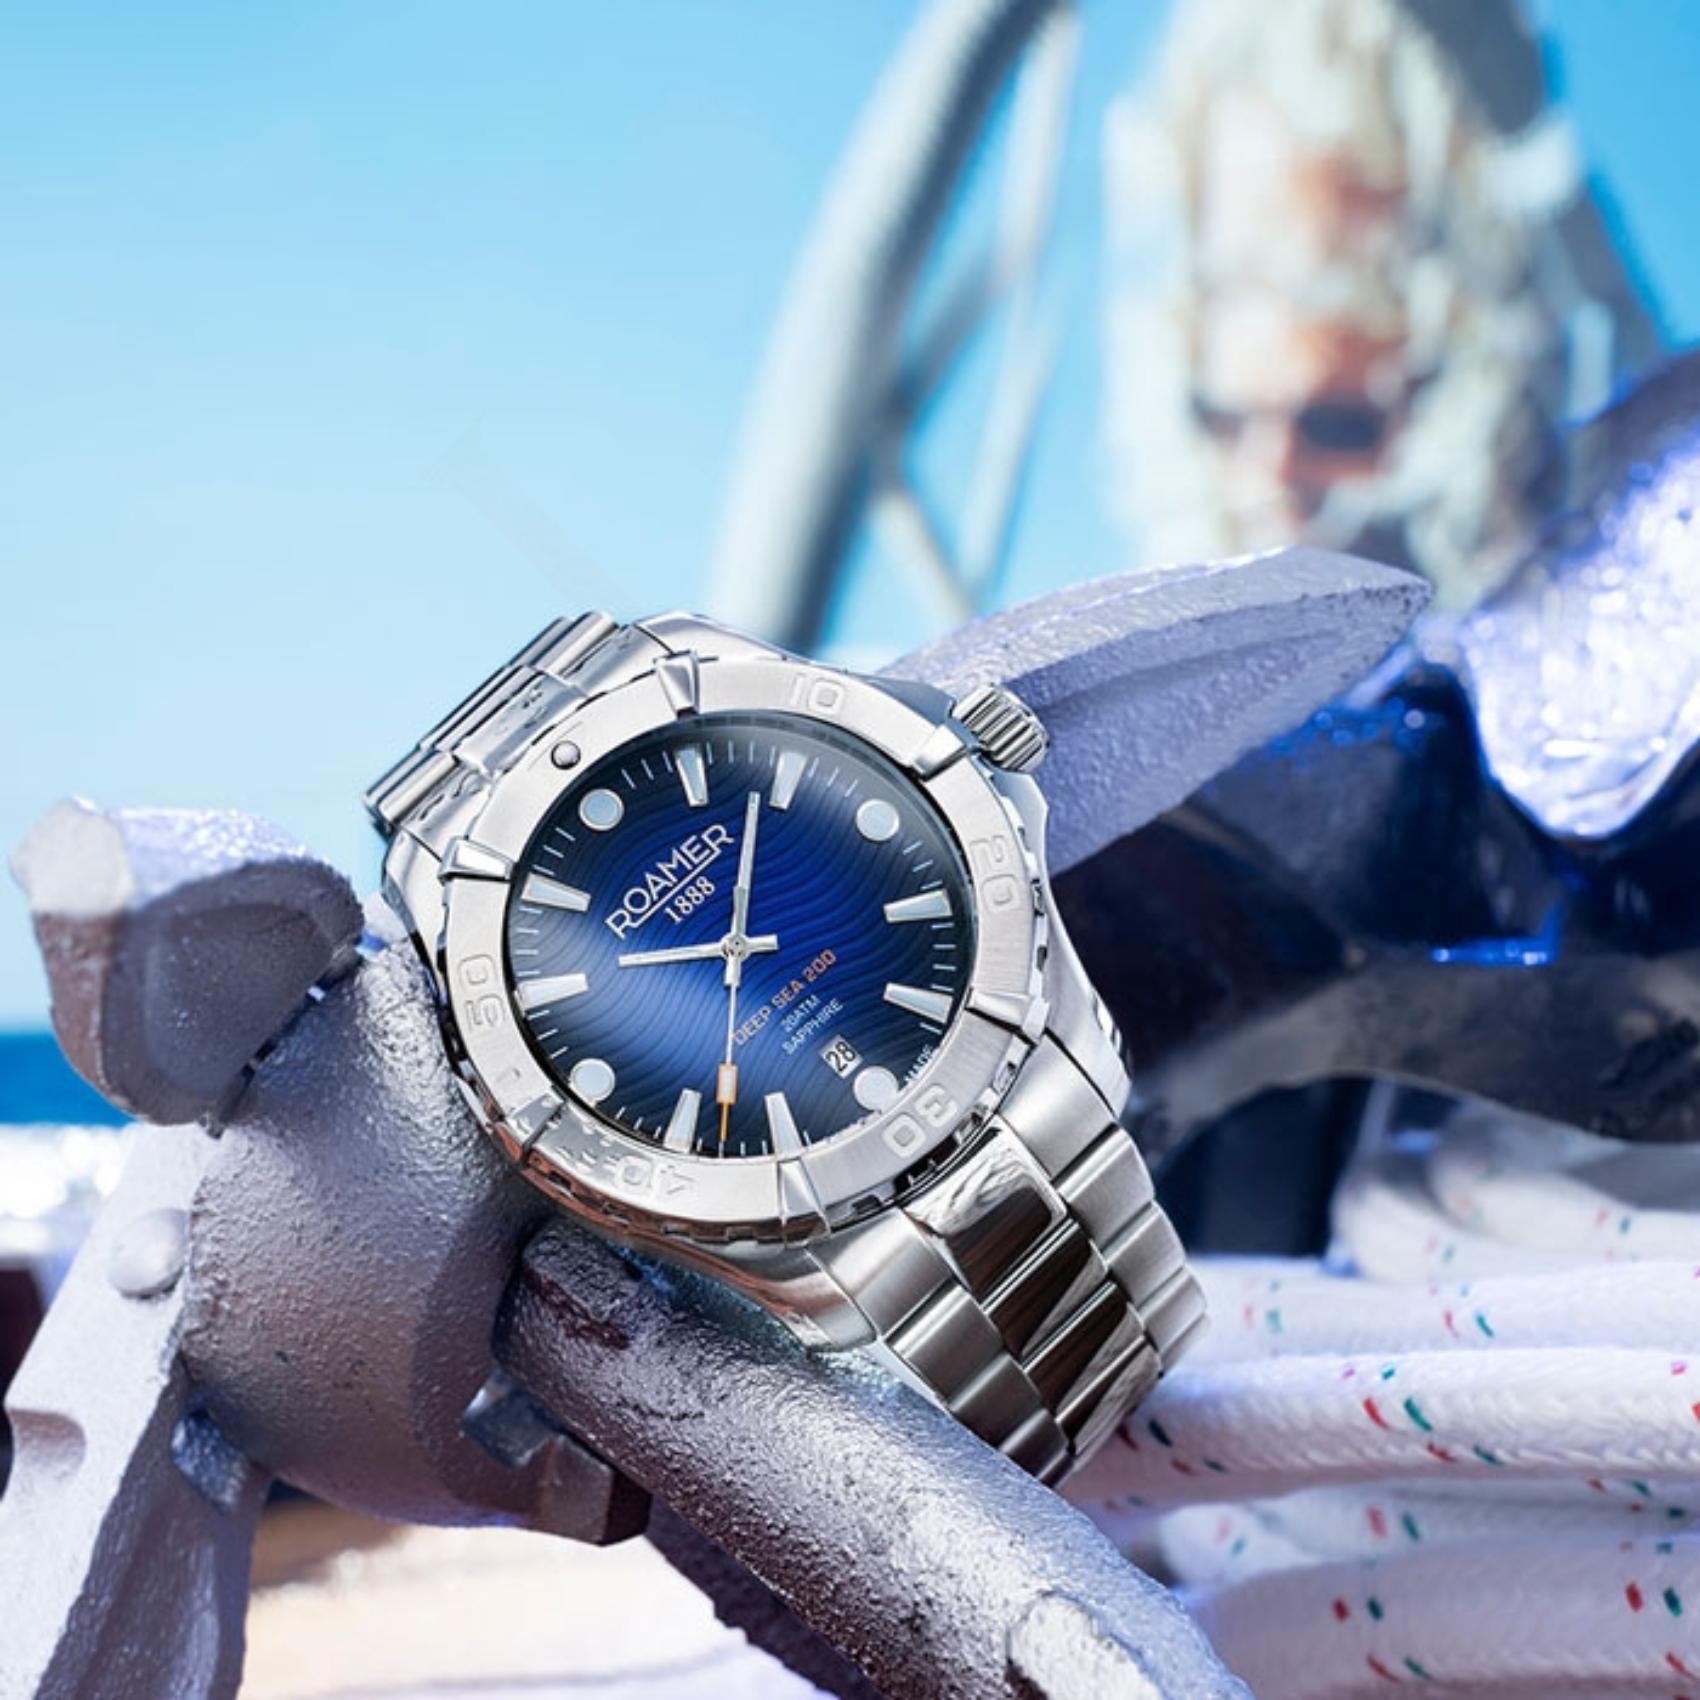 Καταδυτικό ρολόι Roamer Deep Sea 860833-41-45-70, με μπρασελέ σε ασημί χρώμα από ανοξείδωτο ατσάλι και μπλε καντράν με ένδειξη ημερομηνίας.